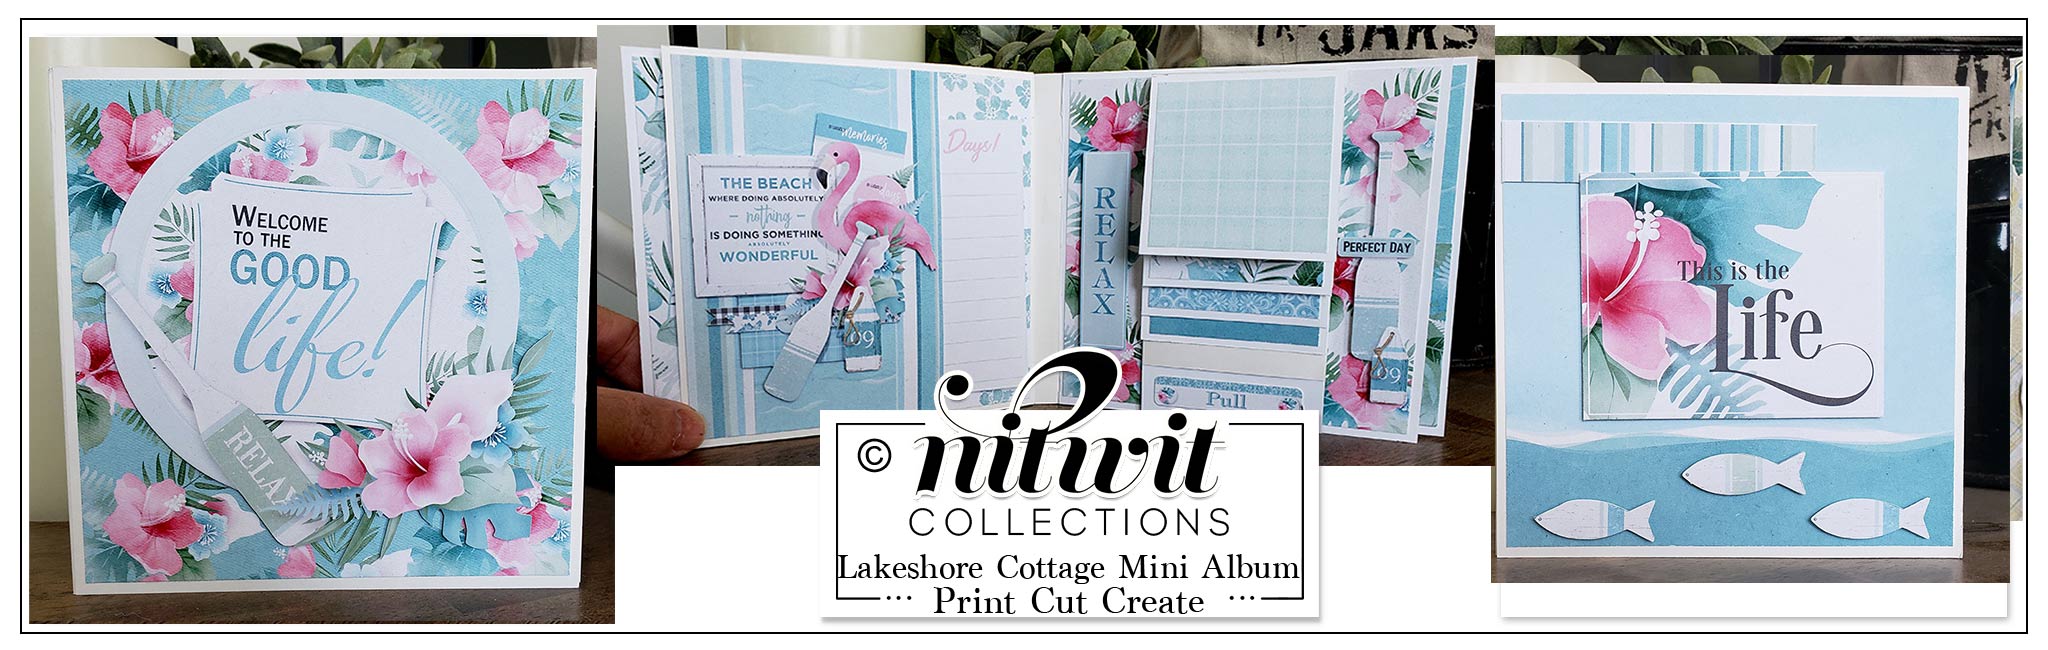 Print Cut Create - Lakeshore Cottage Mini Album Kit